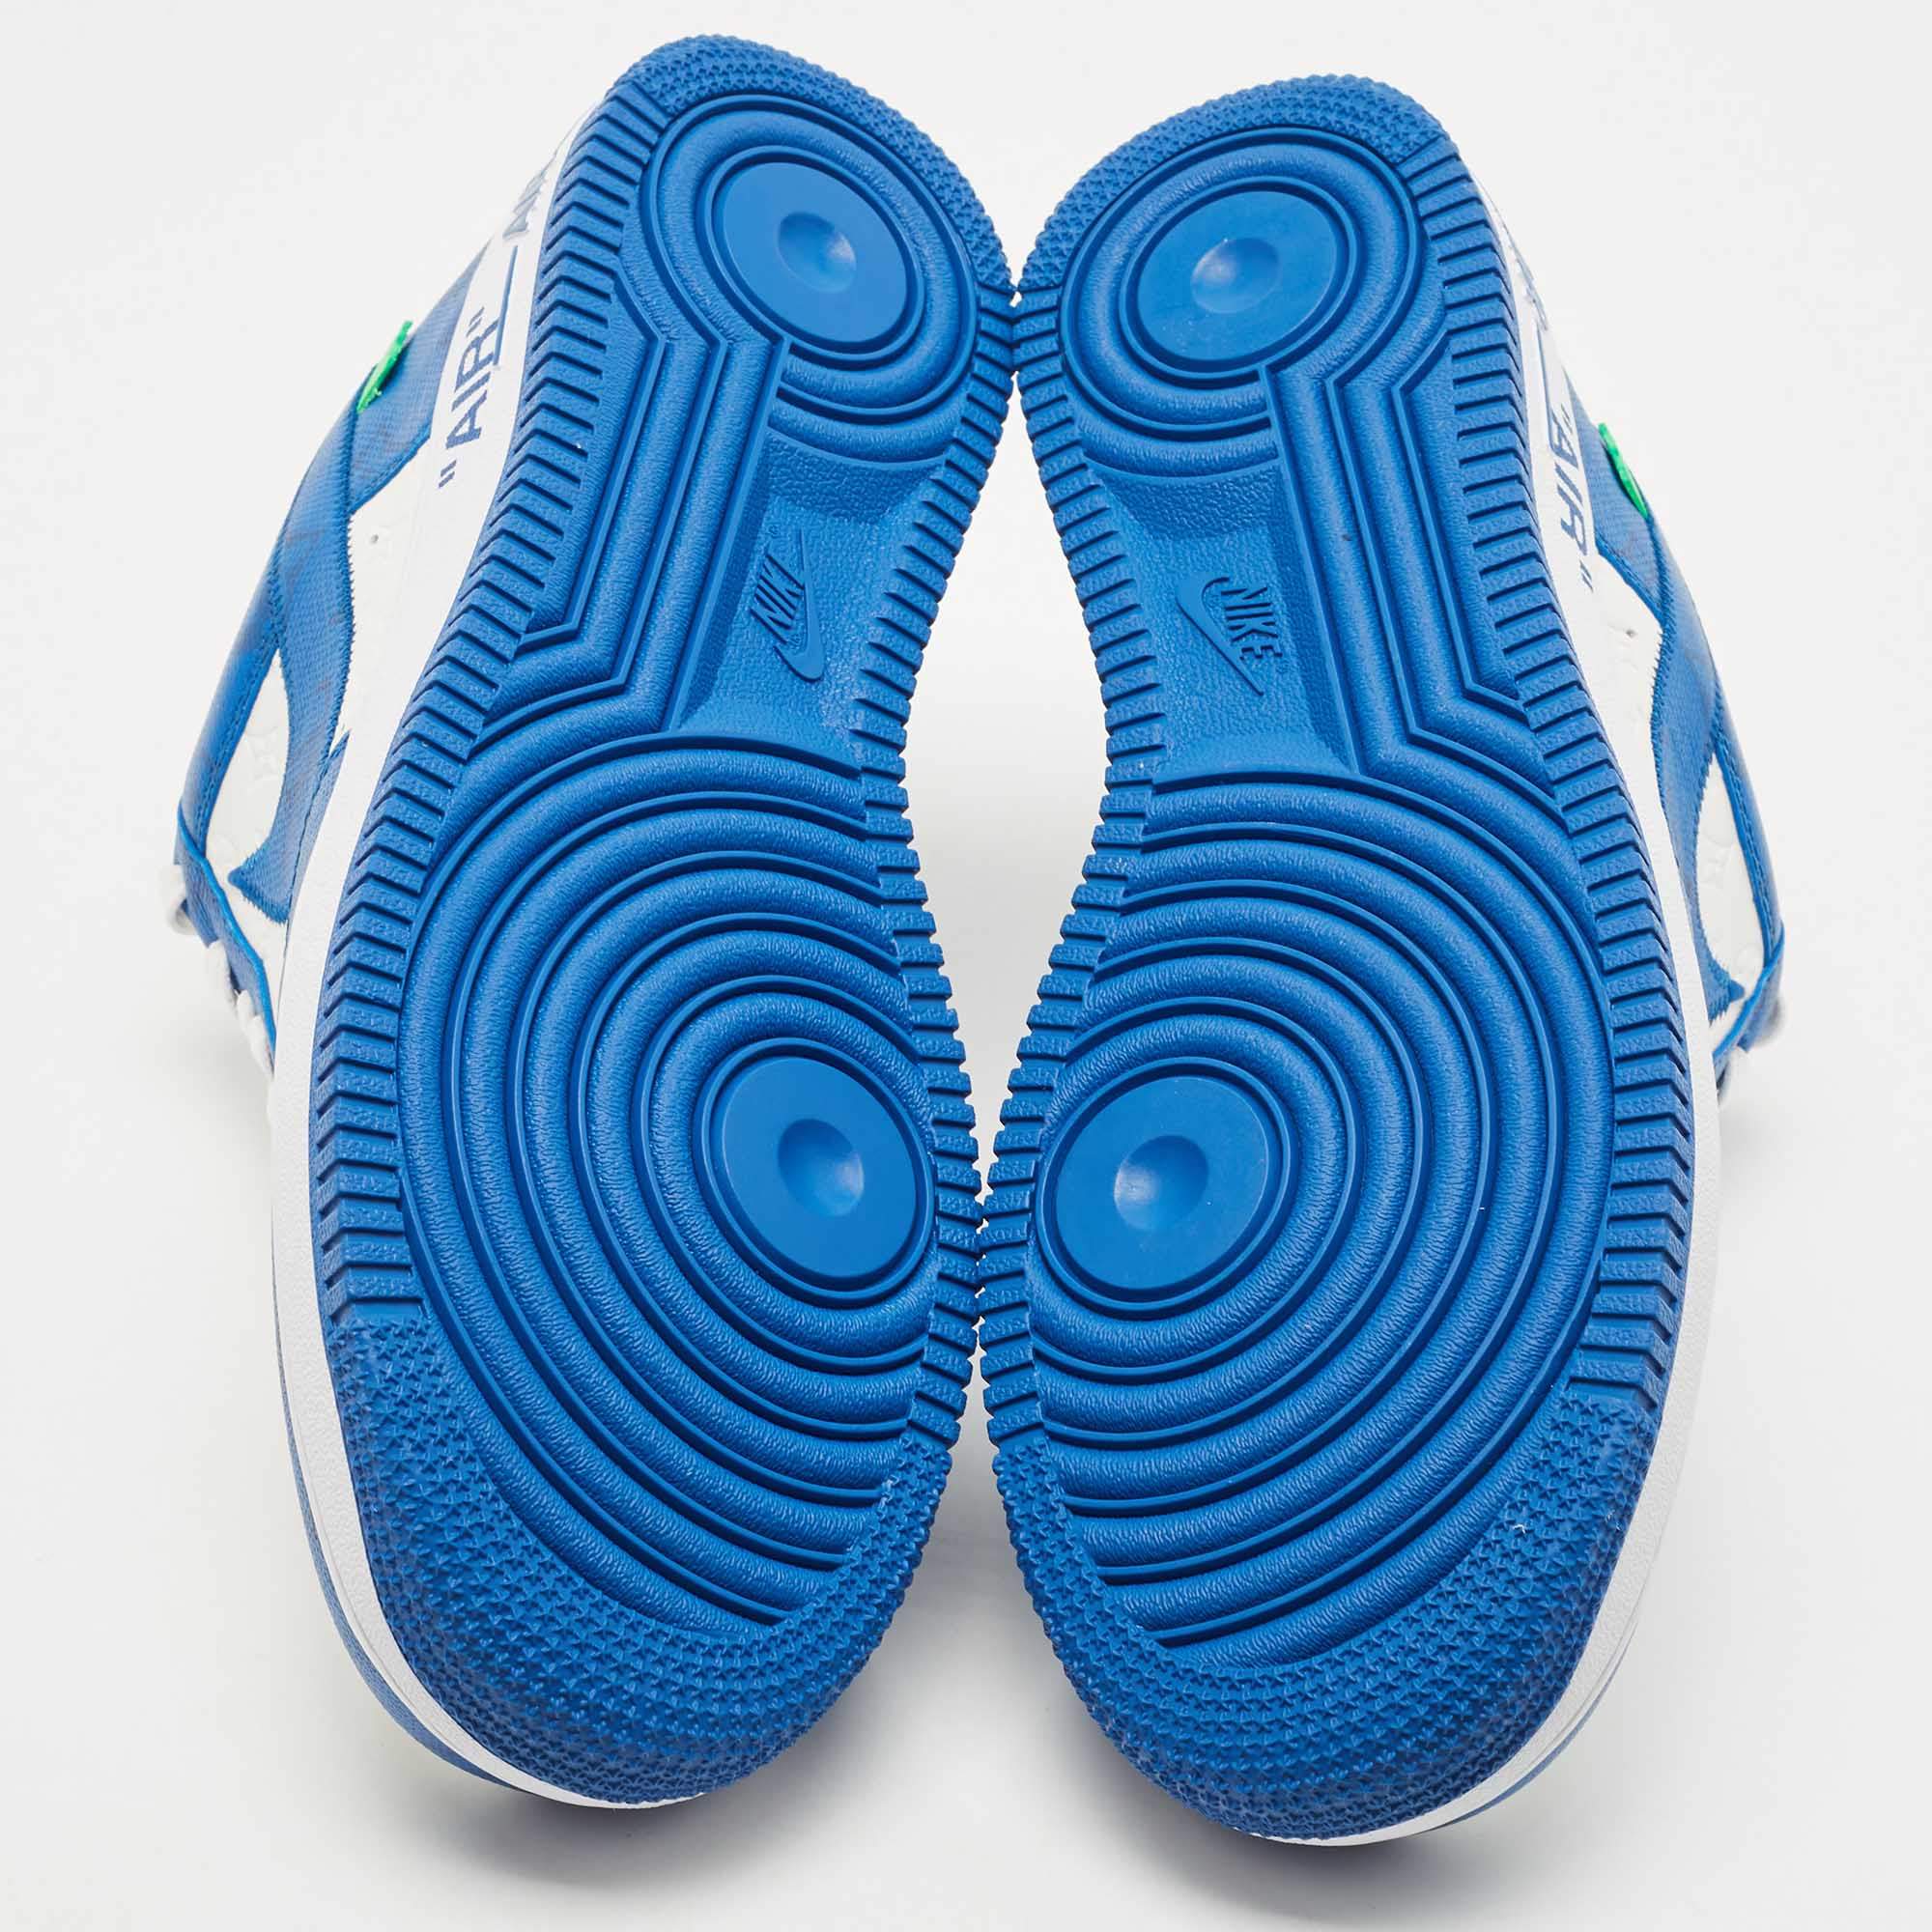 Tênis de luxo Louis vuitton  Futuristic shoes, Nike shoes blue